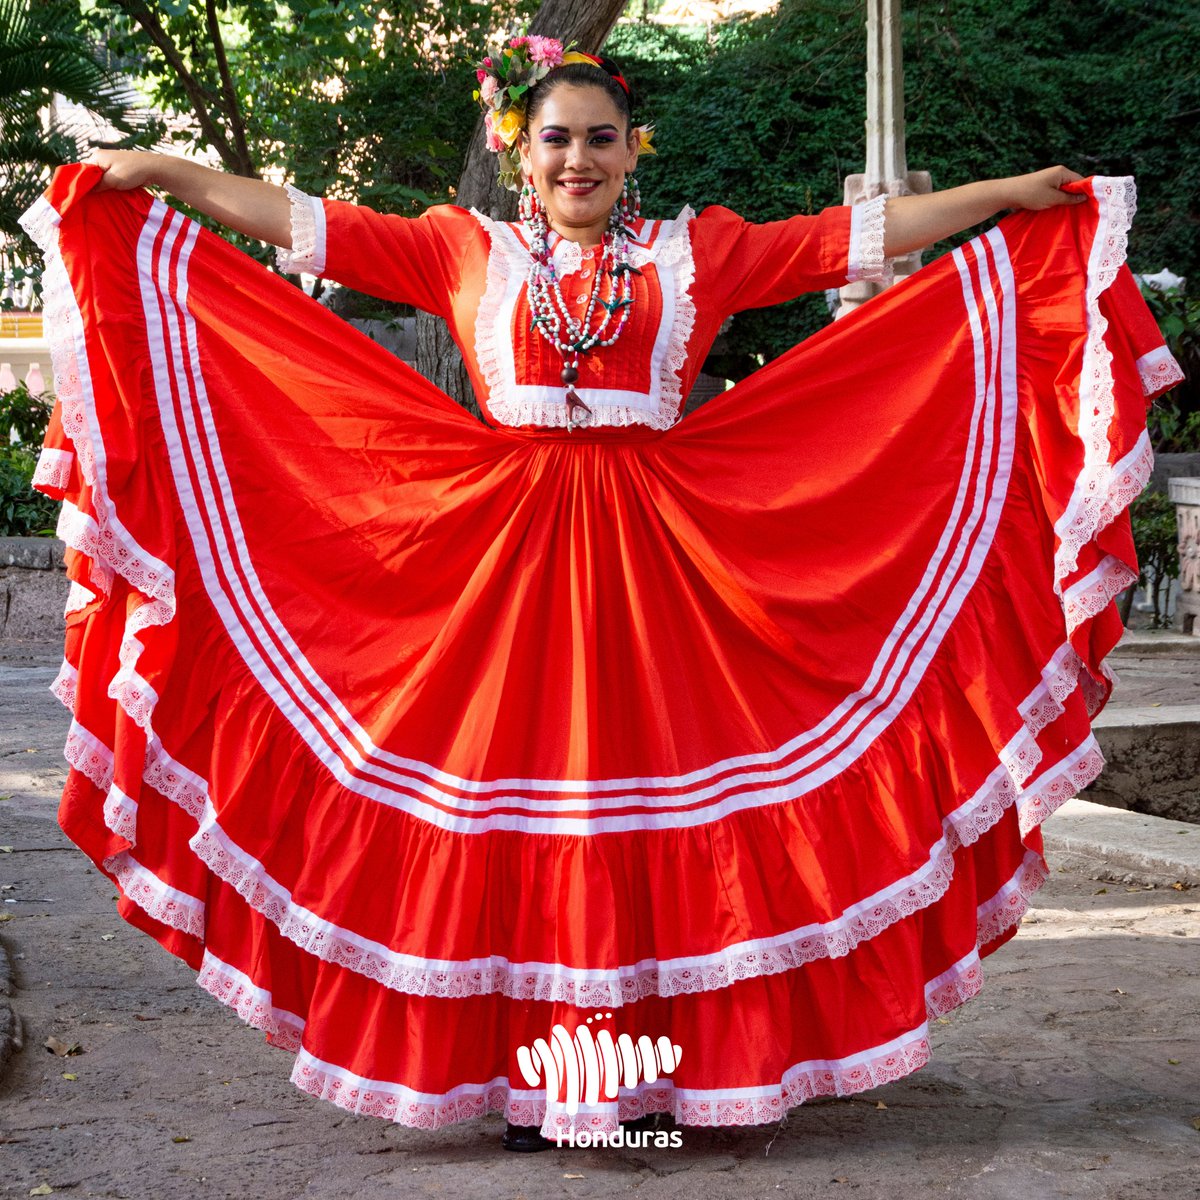 Eh borde Tentáculo Marca País Honduras on Twitter: "Traje Indígena de La Esperanza Intibucá,  el traje más representativo de las danzas hondureñas y el primer traje  recopilado en la historia de nuestro país, documentado por